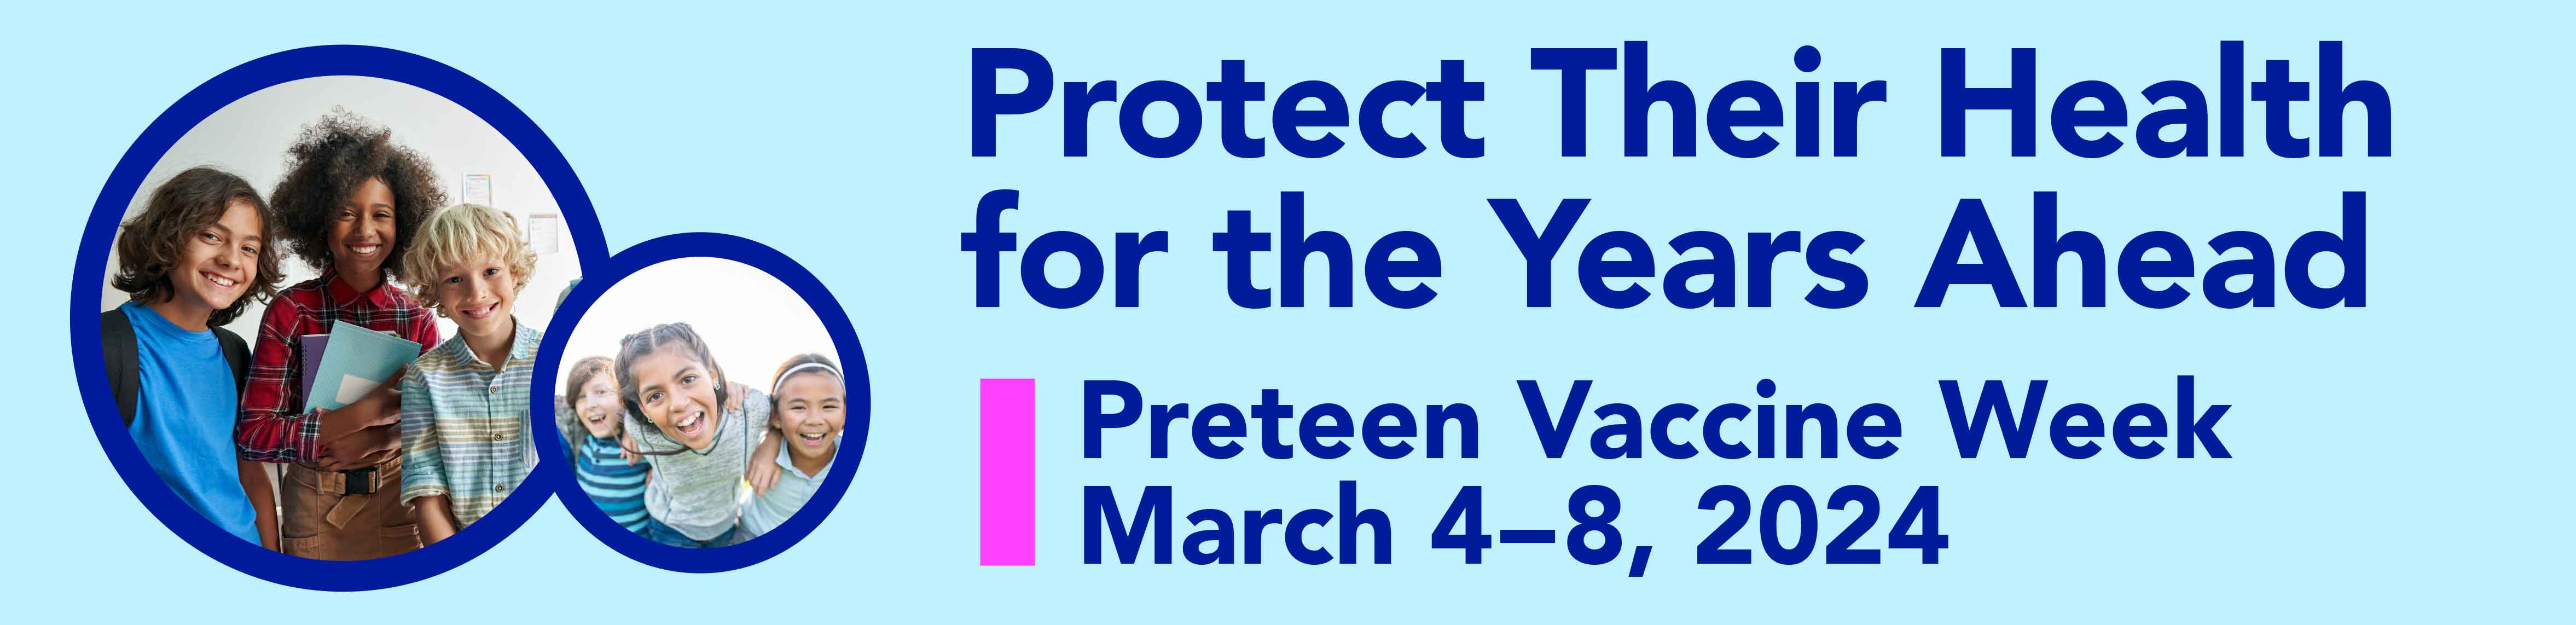 Banner promoting Preteen Vaccine Week